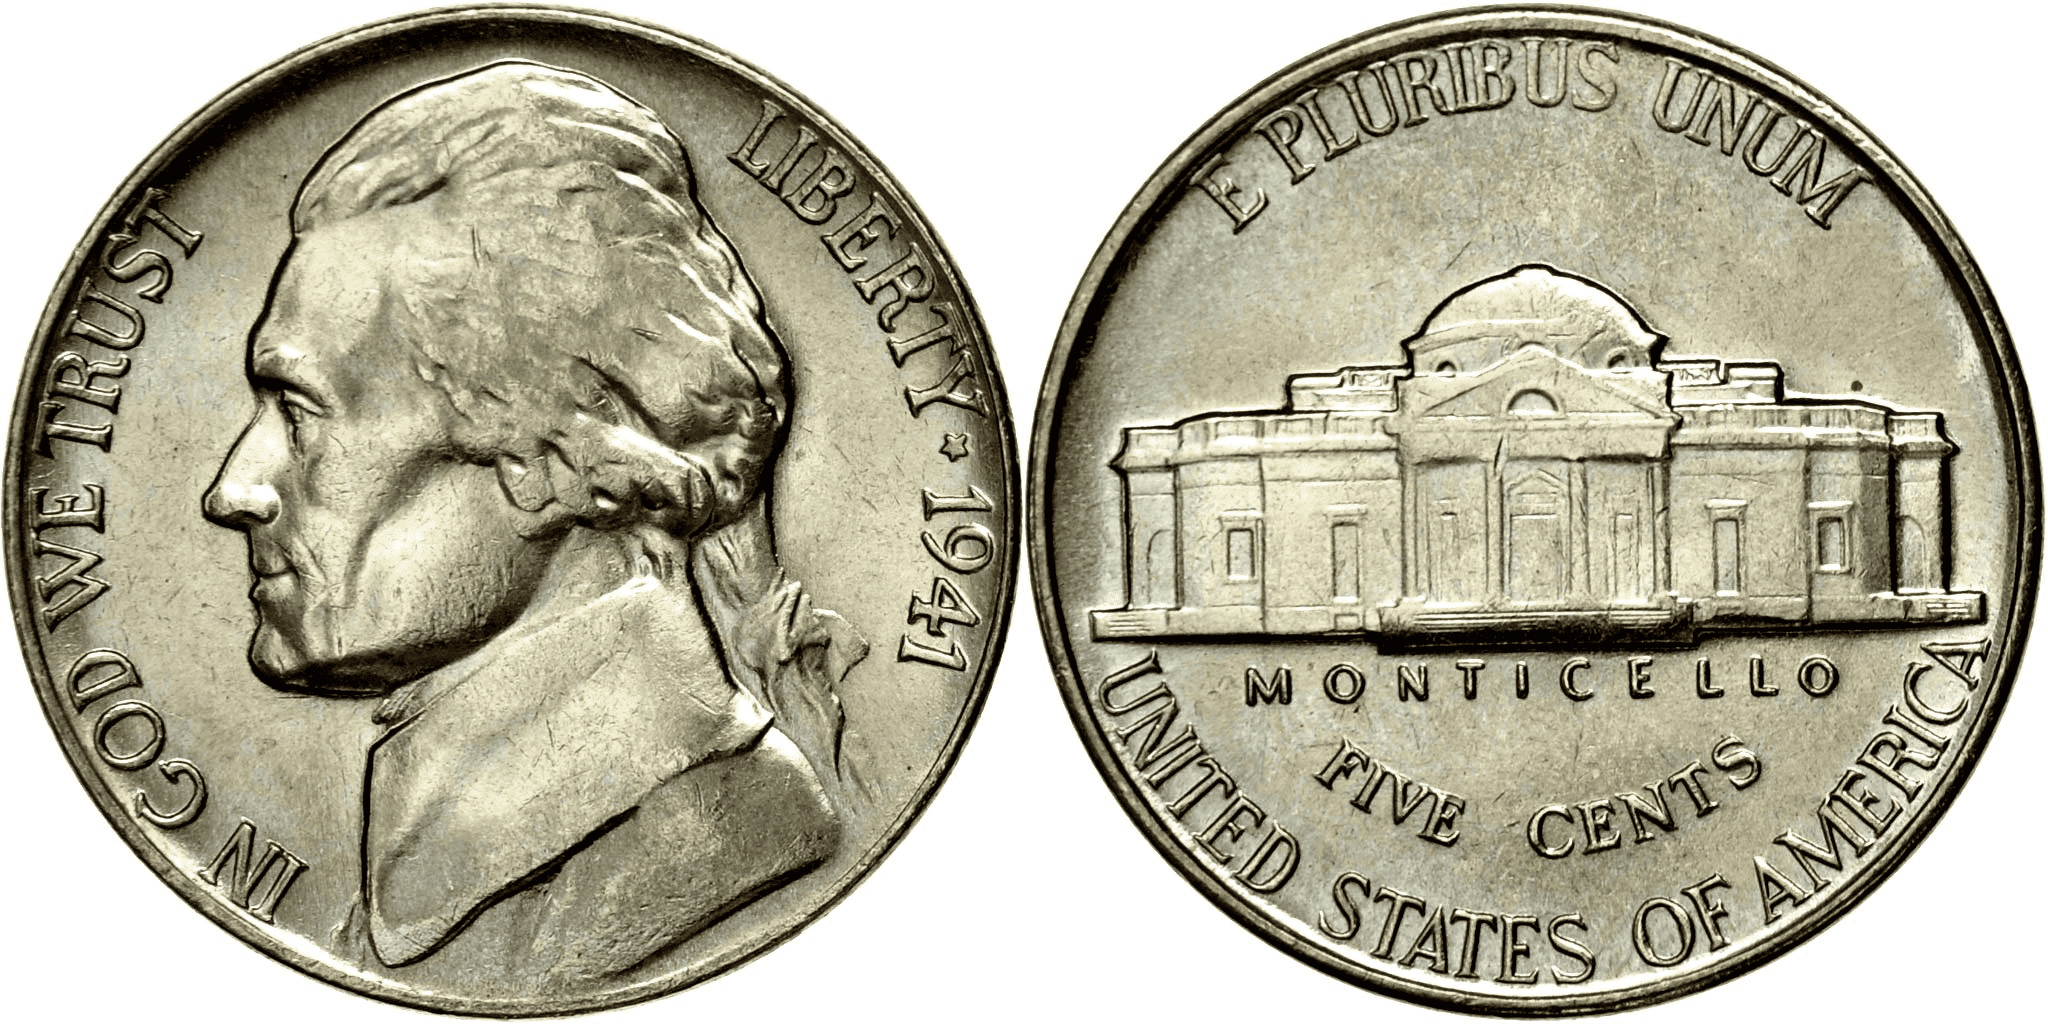 1941 nickel value